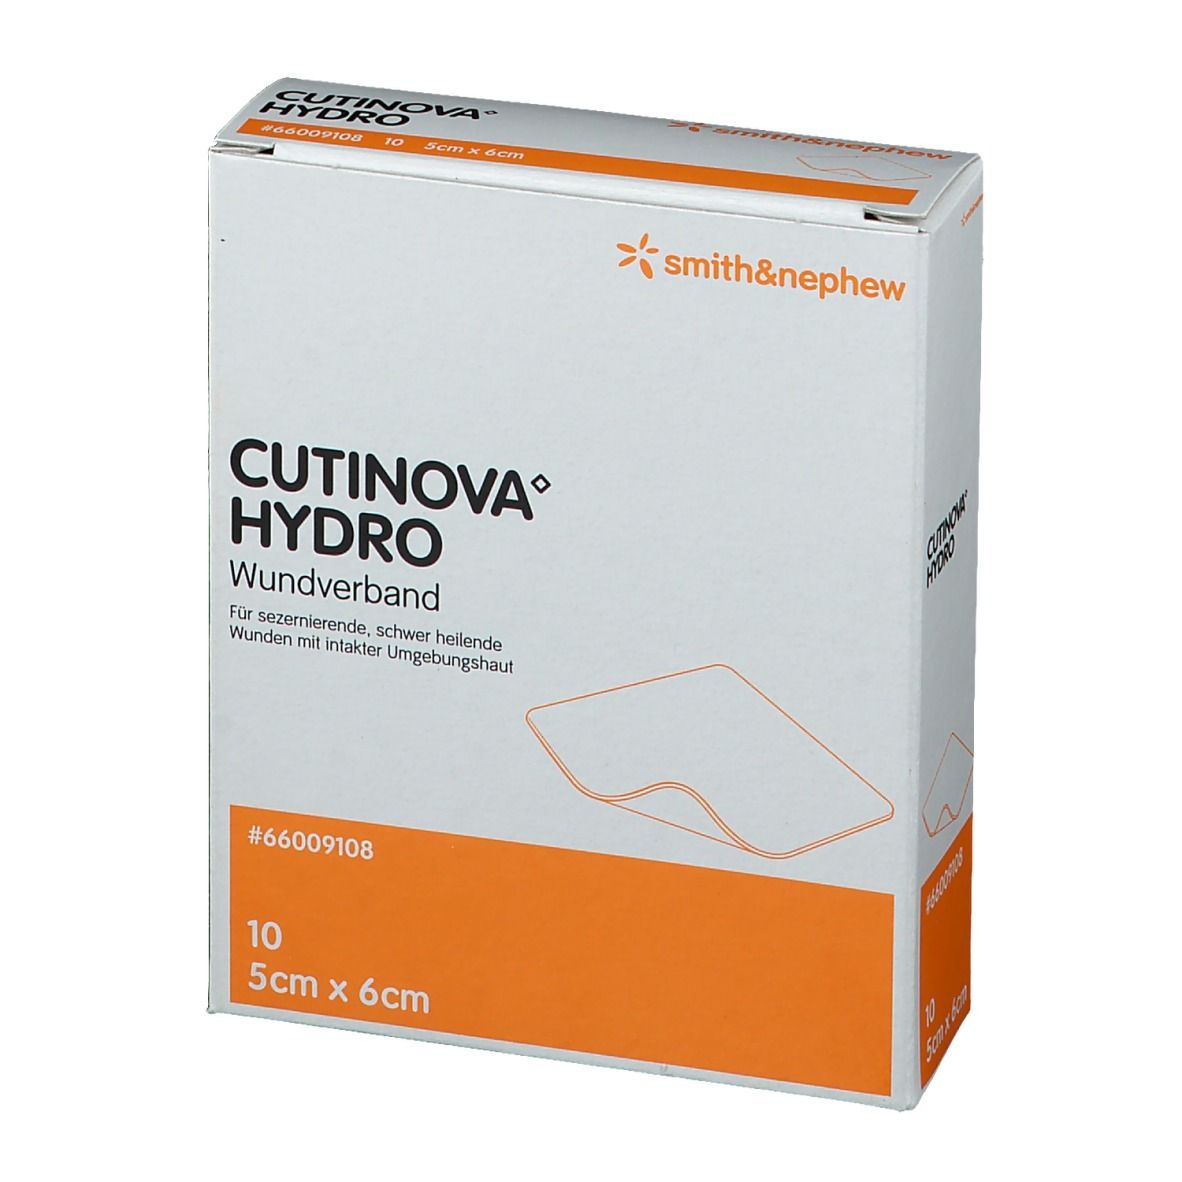 CUTINOVA® Hydro haftende Wundauflage 5 cm x 6 cm steril